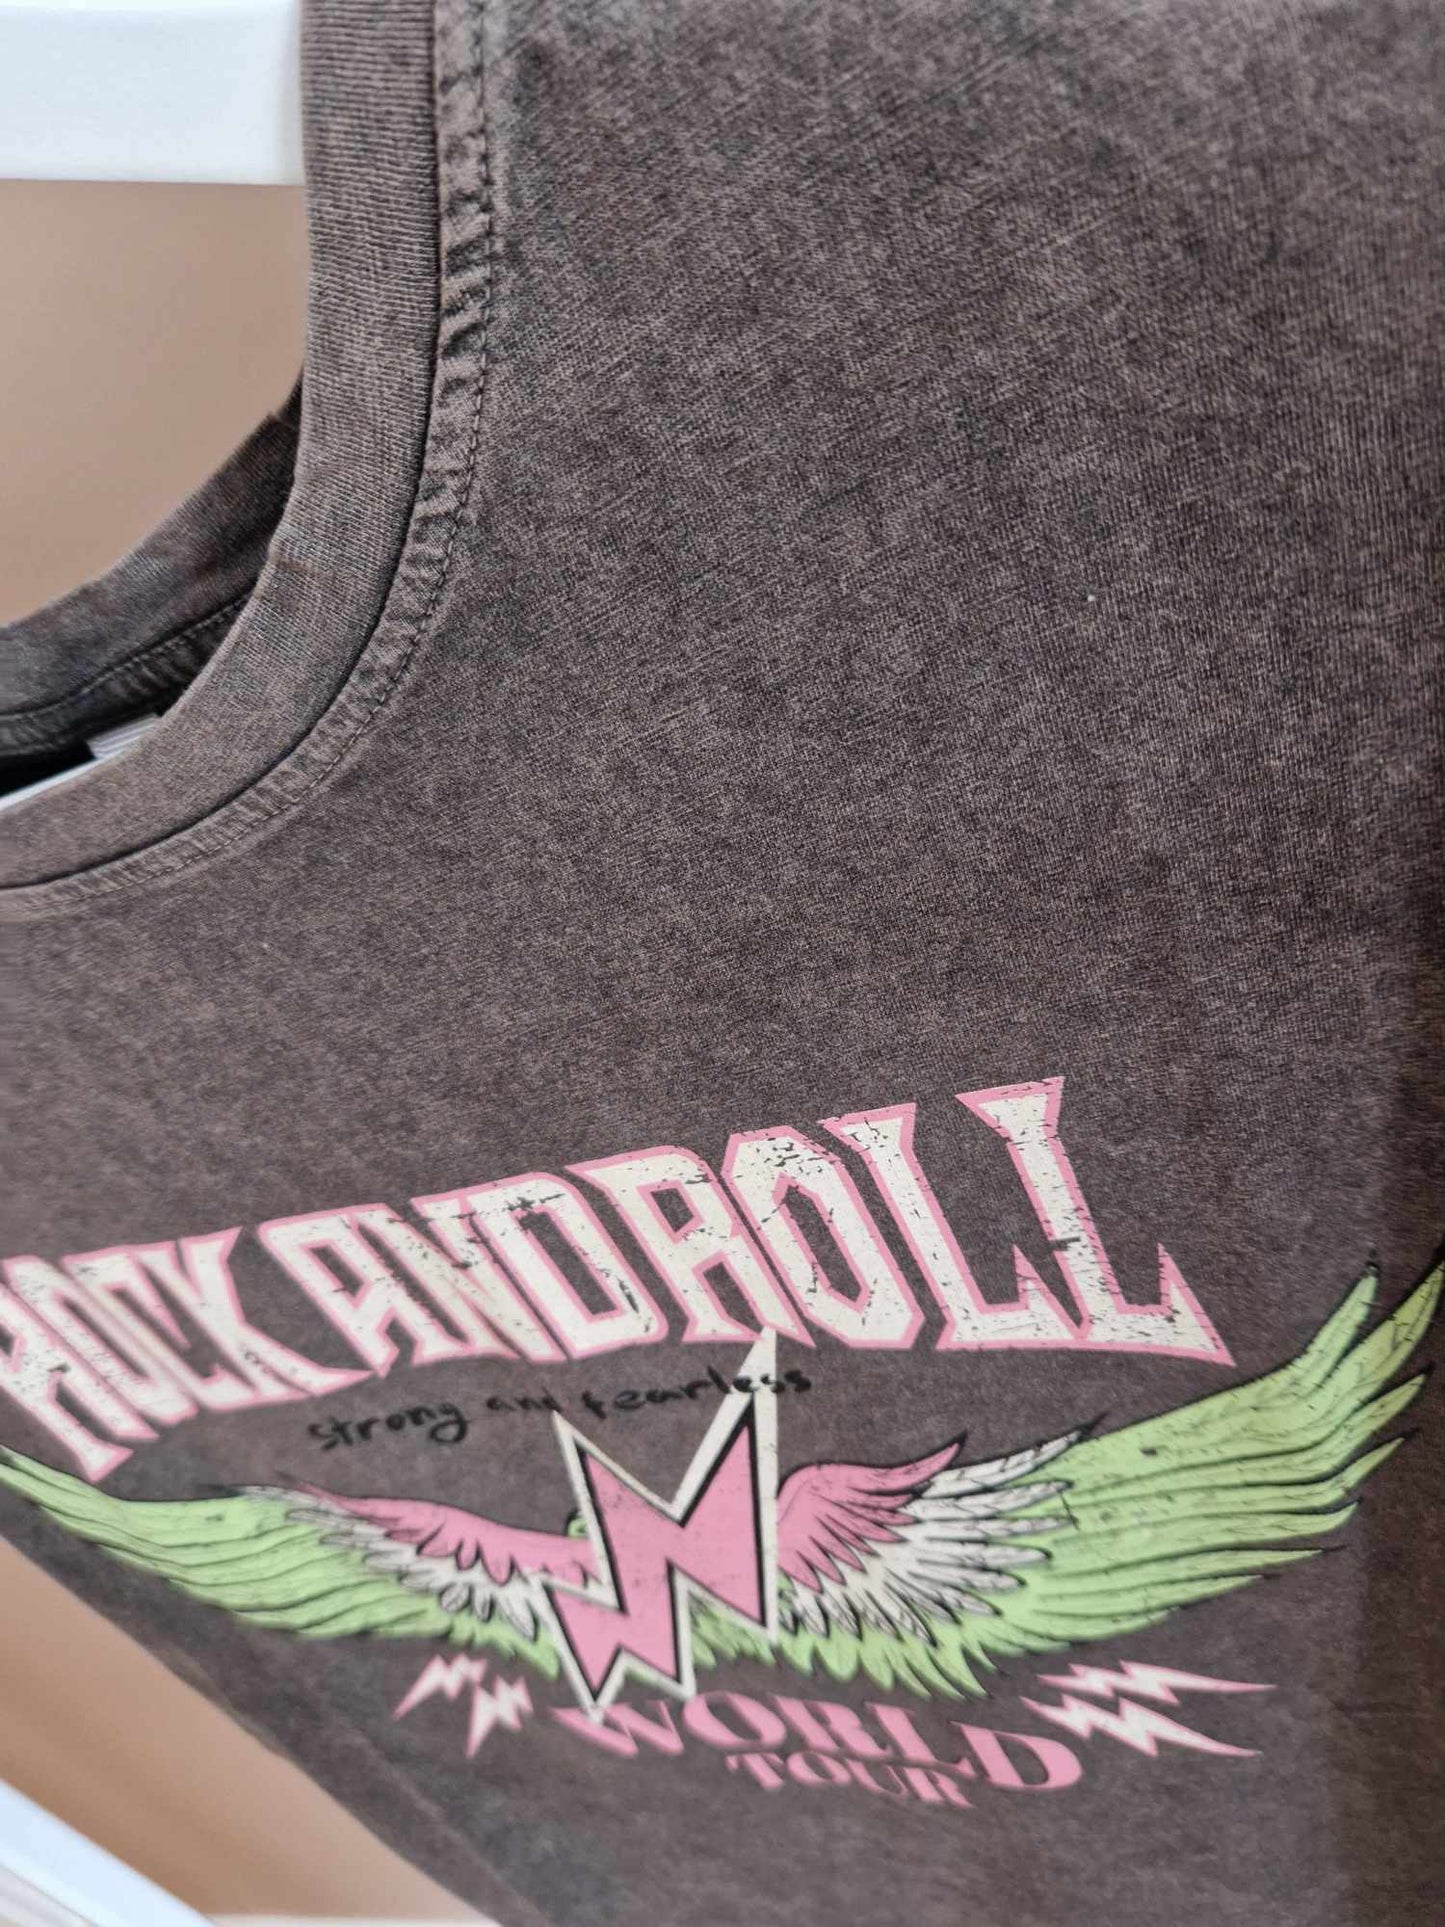 T-shirt - RockandRoll